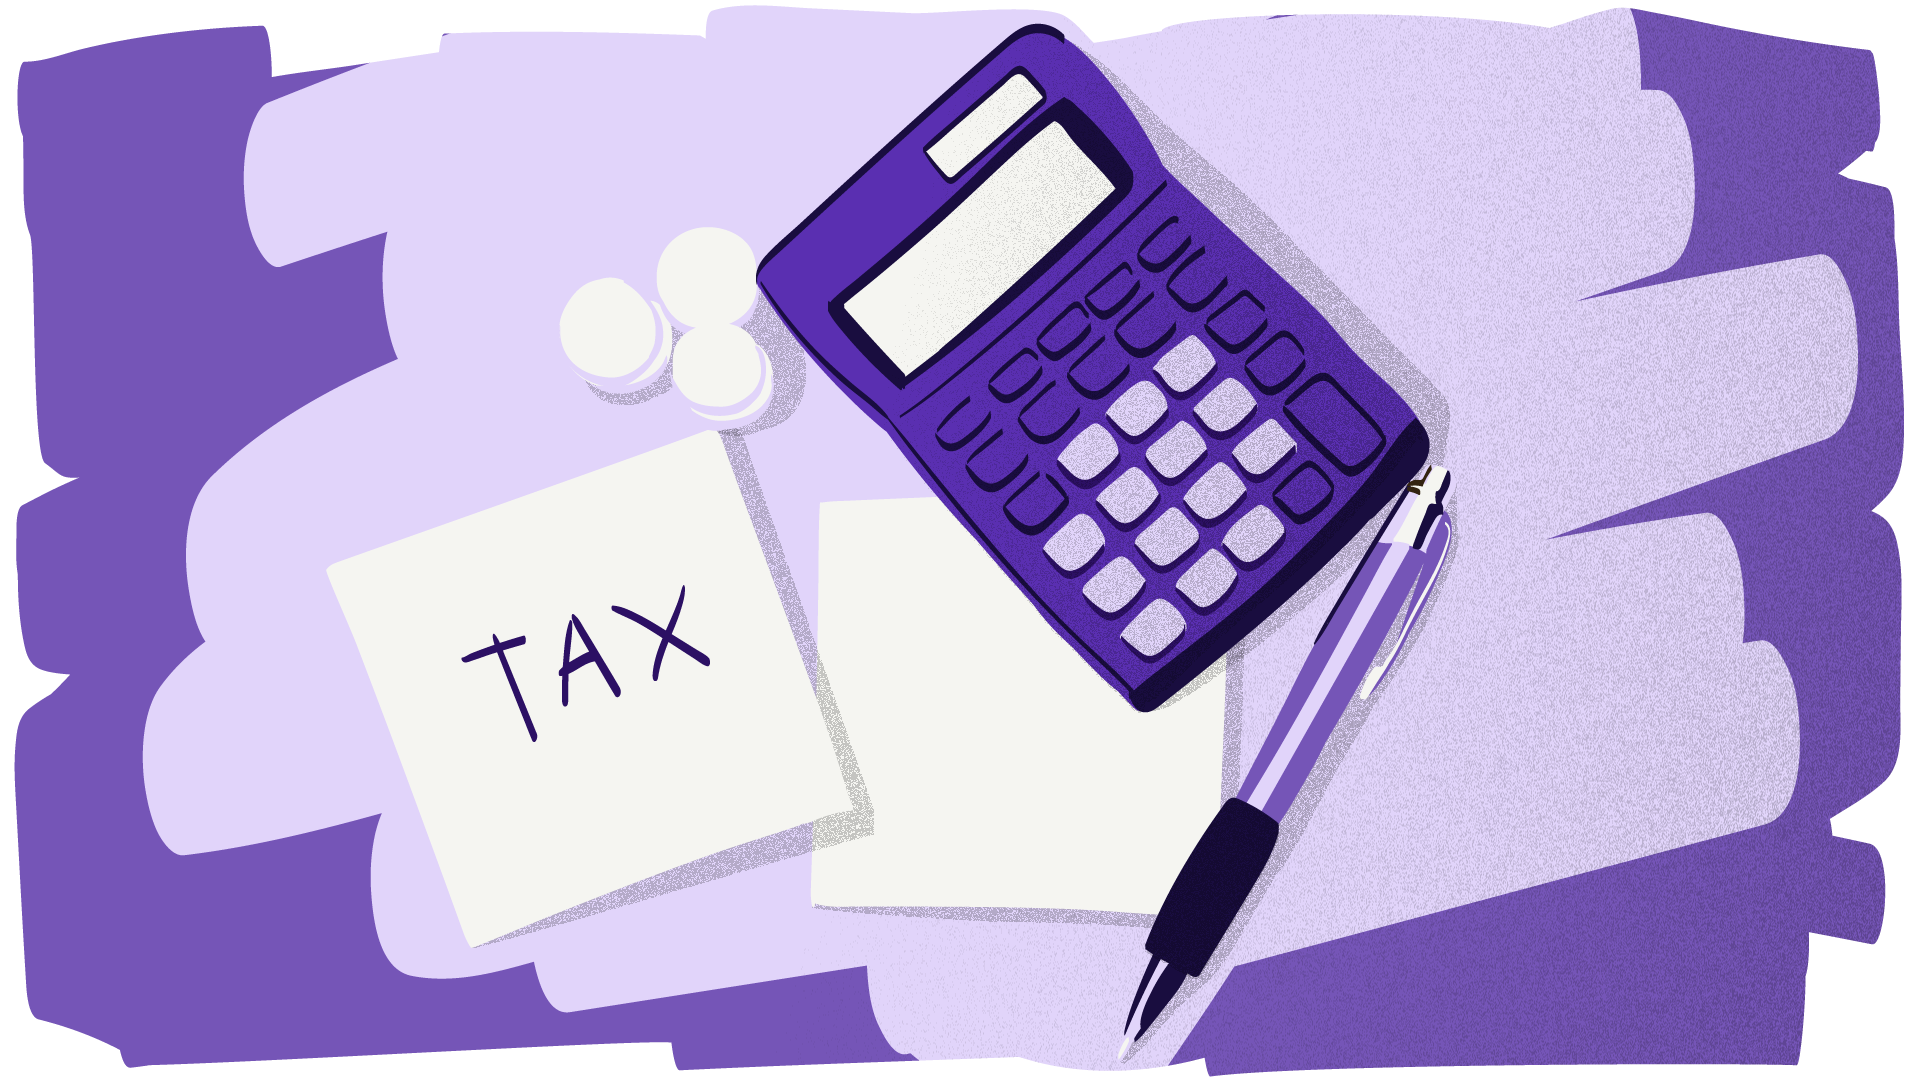 tax clipart indirect tax